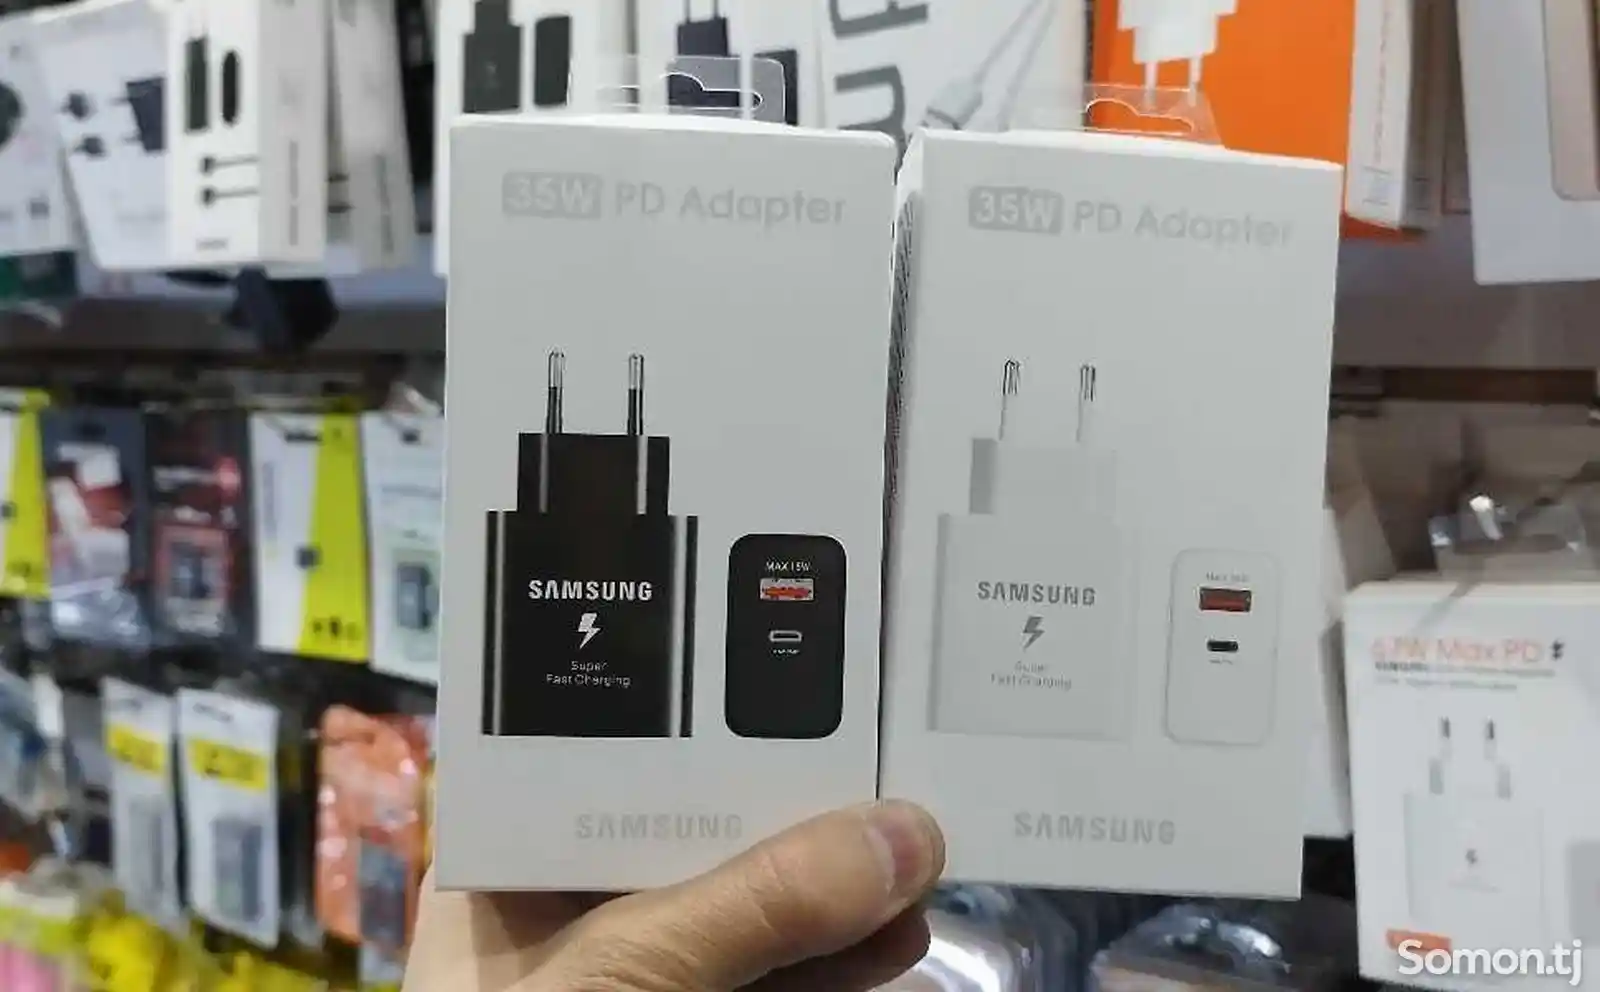 Адаптер 35W PD Adapter Samsung-3